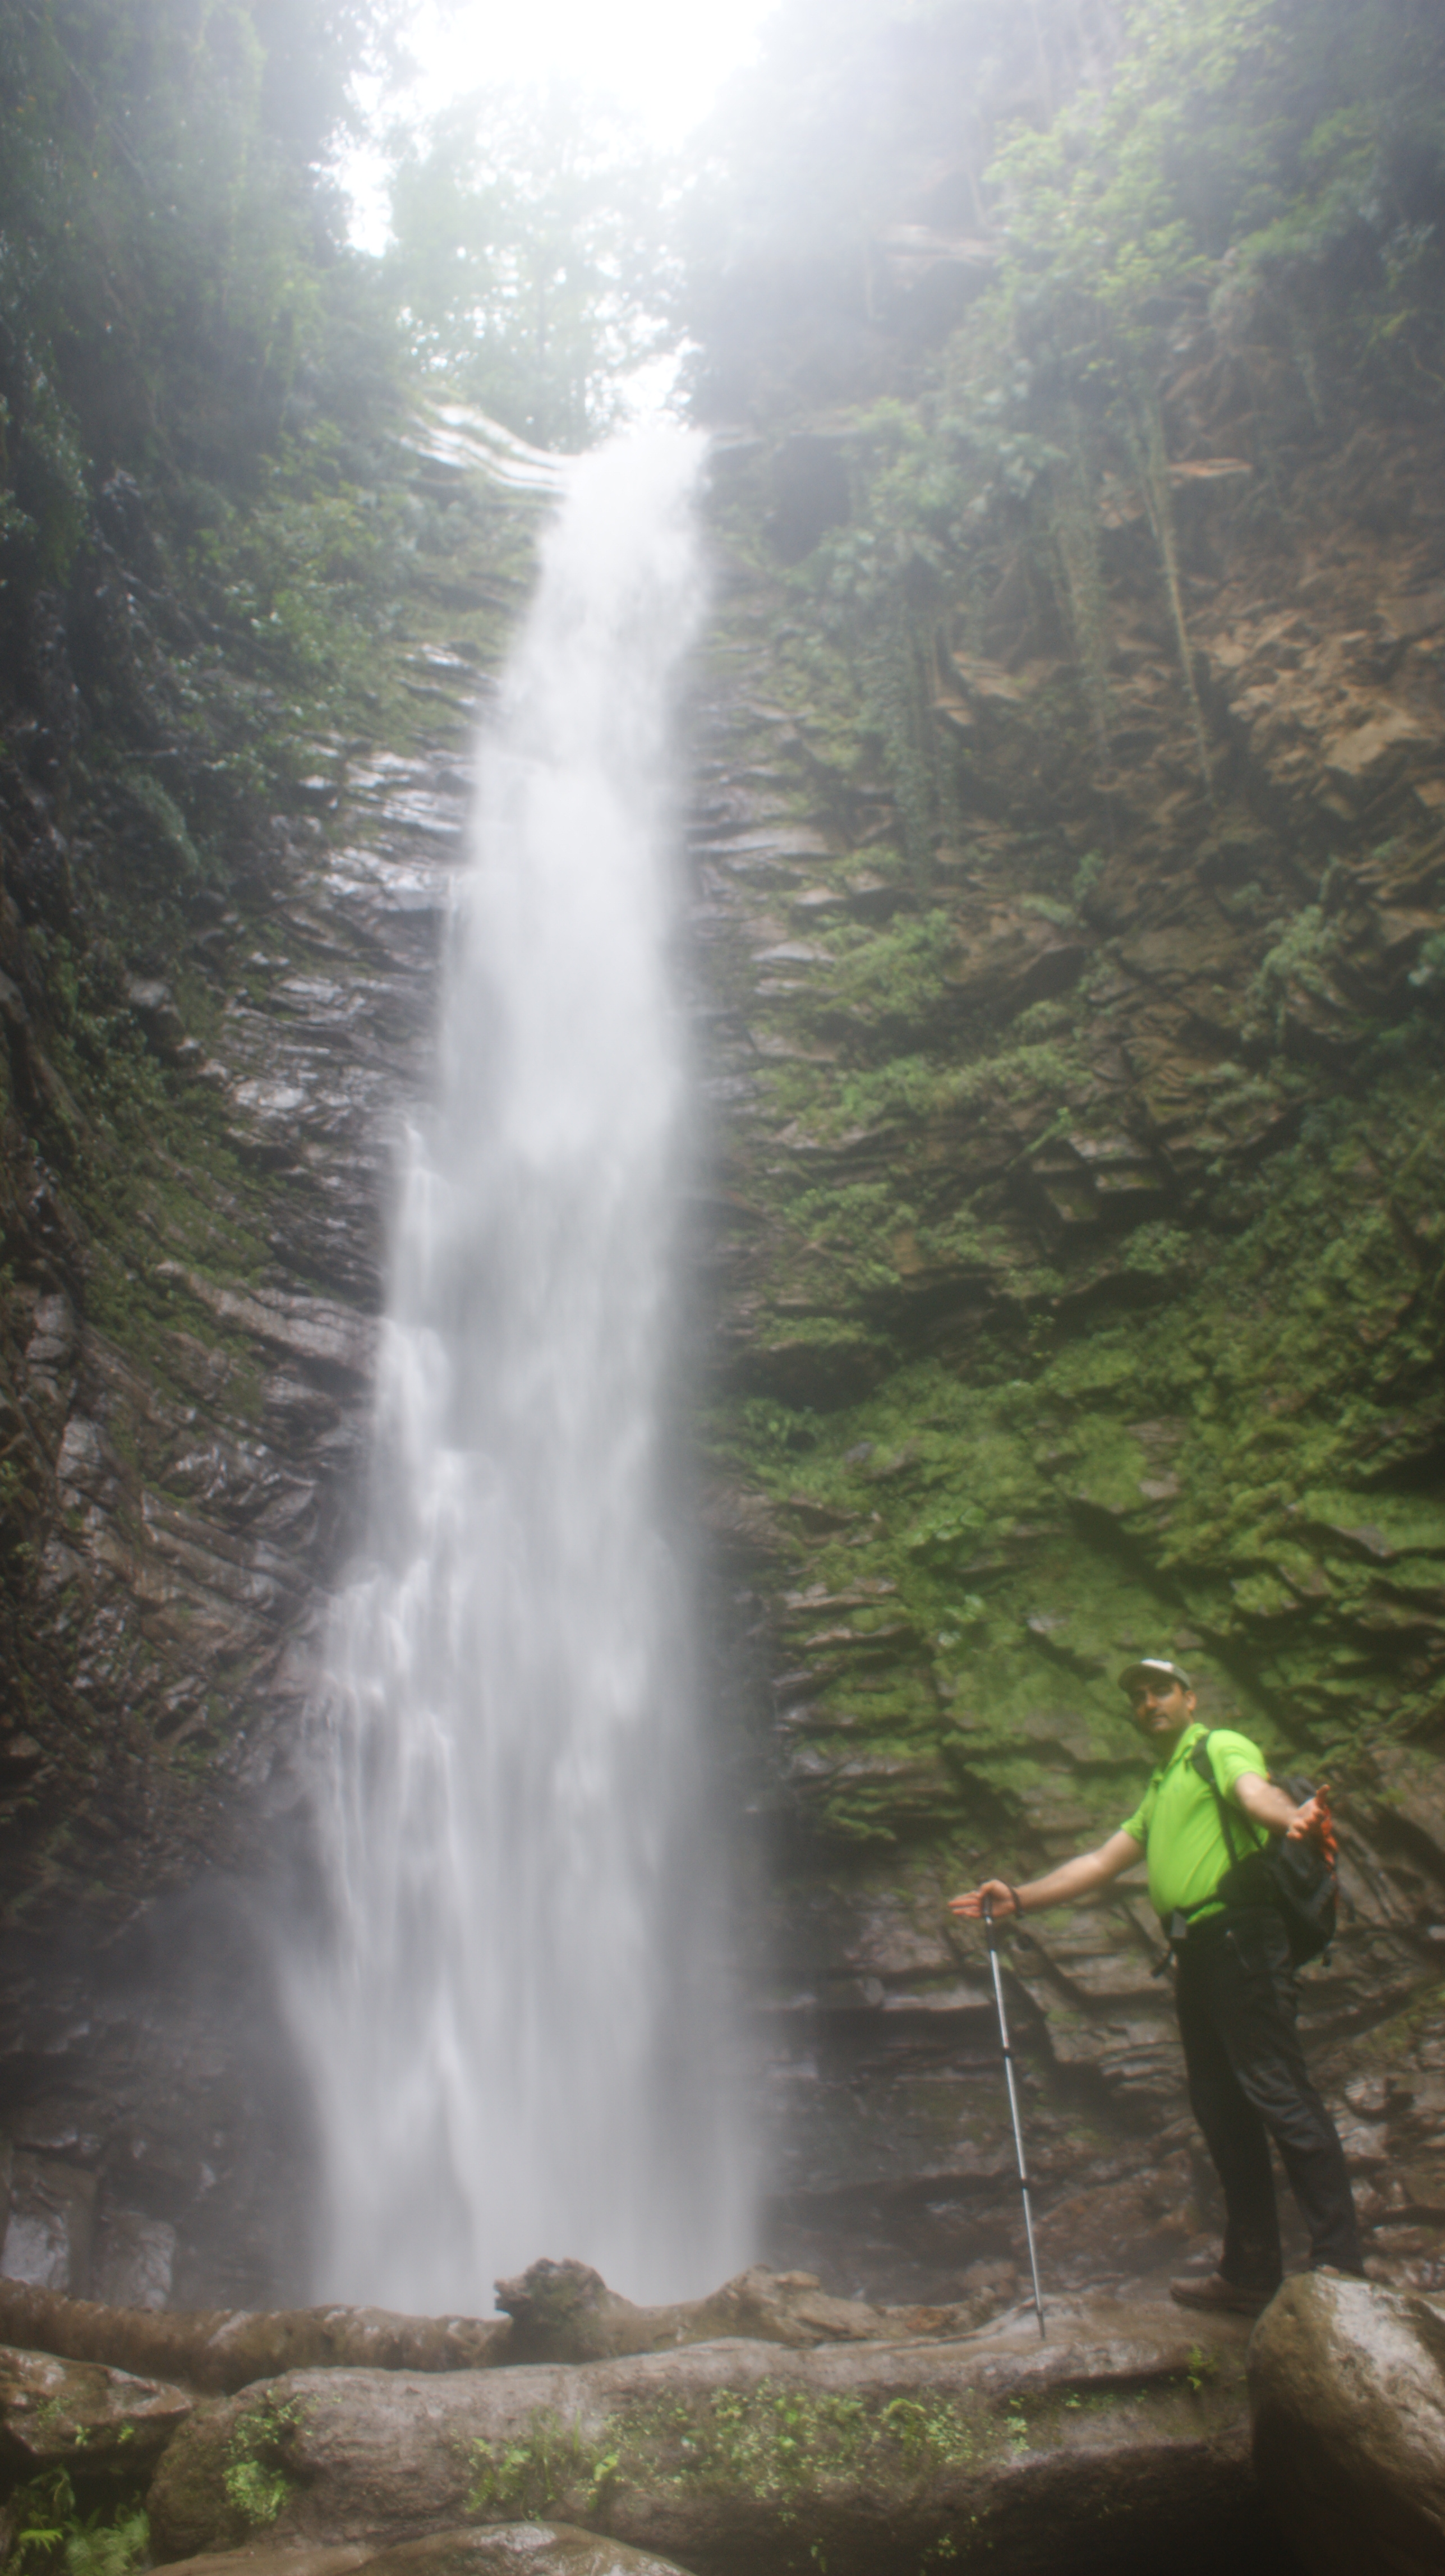 آبشار گزو شهرستان شیرگاه مازندران - تابناک | TABNAK